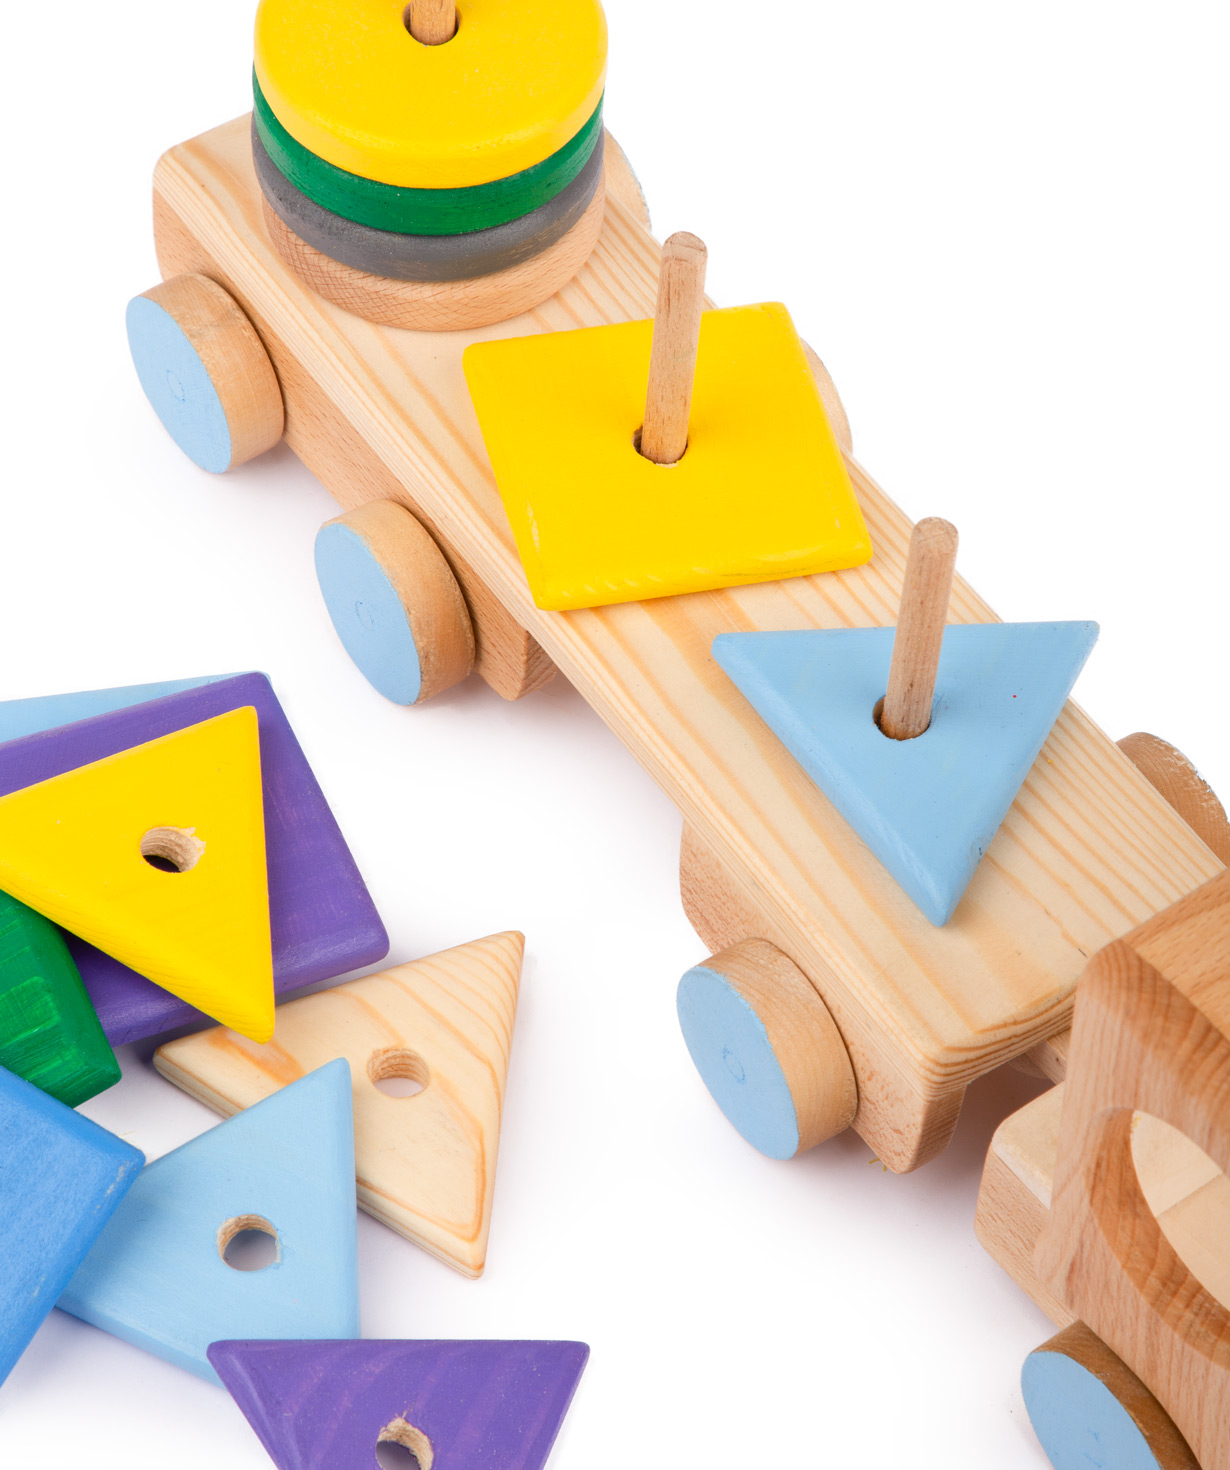 Խաղալիք «Im wooden toys» մեքենա, փայտե №8